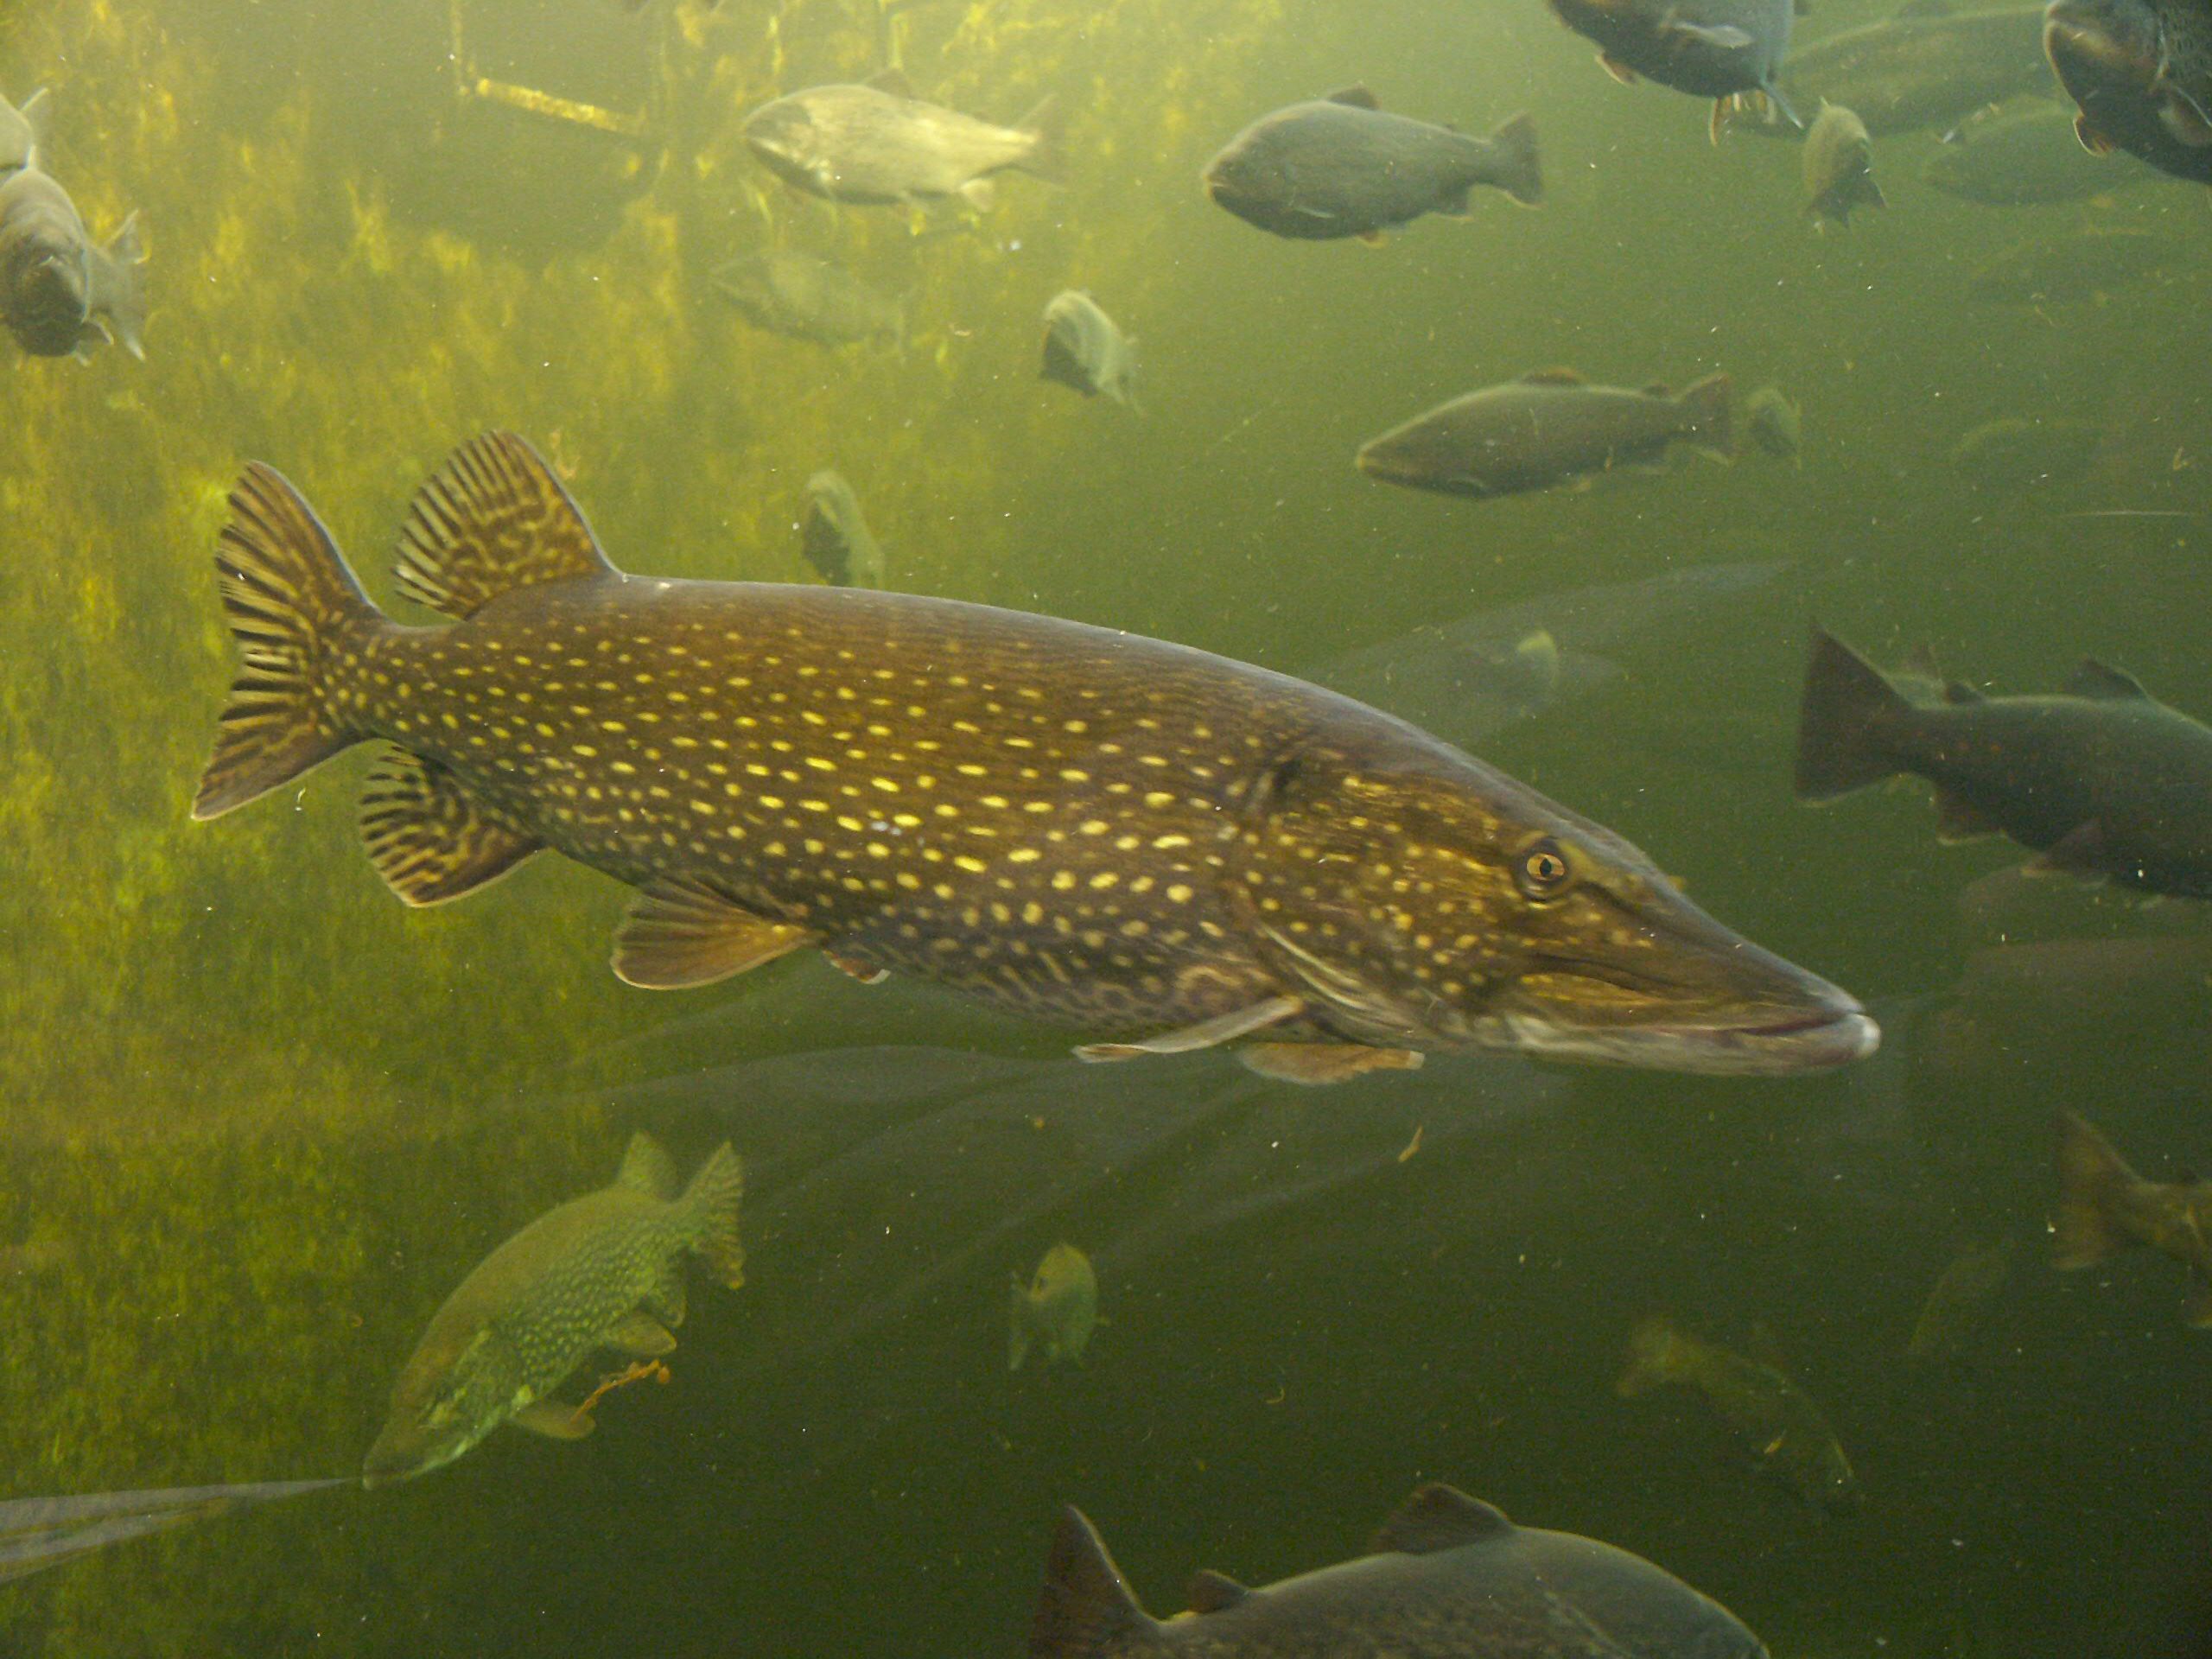 Pike na aquarium ọha na eze (Kotka, Finland)